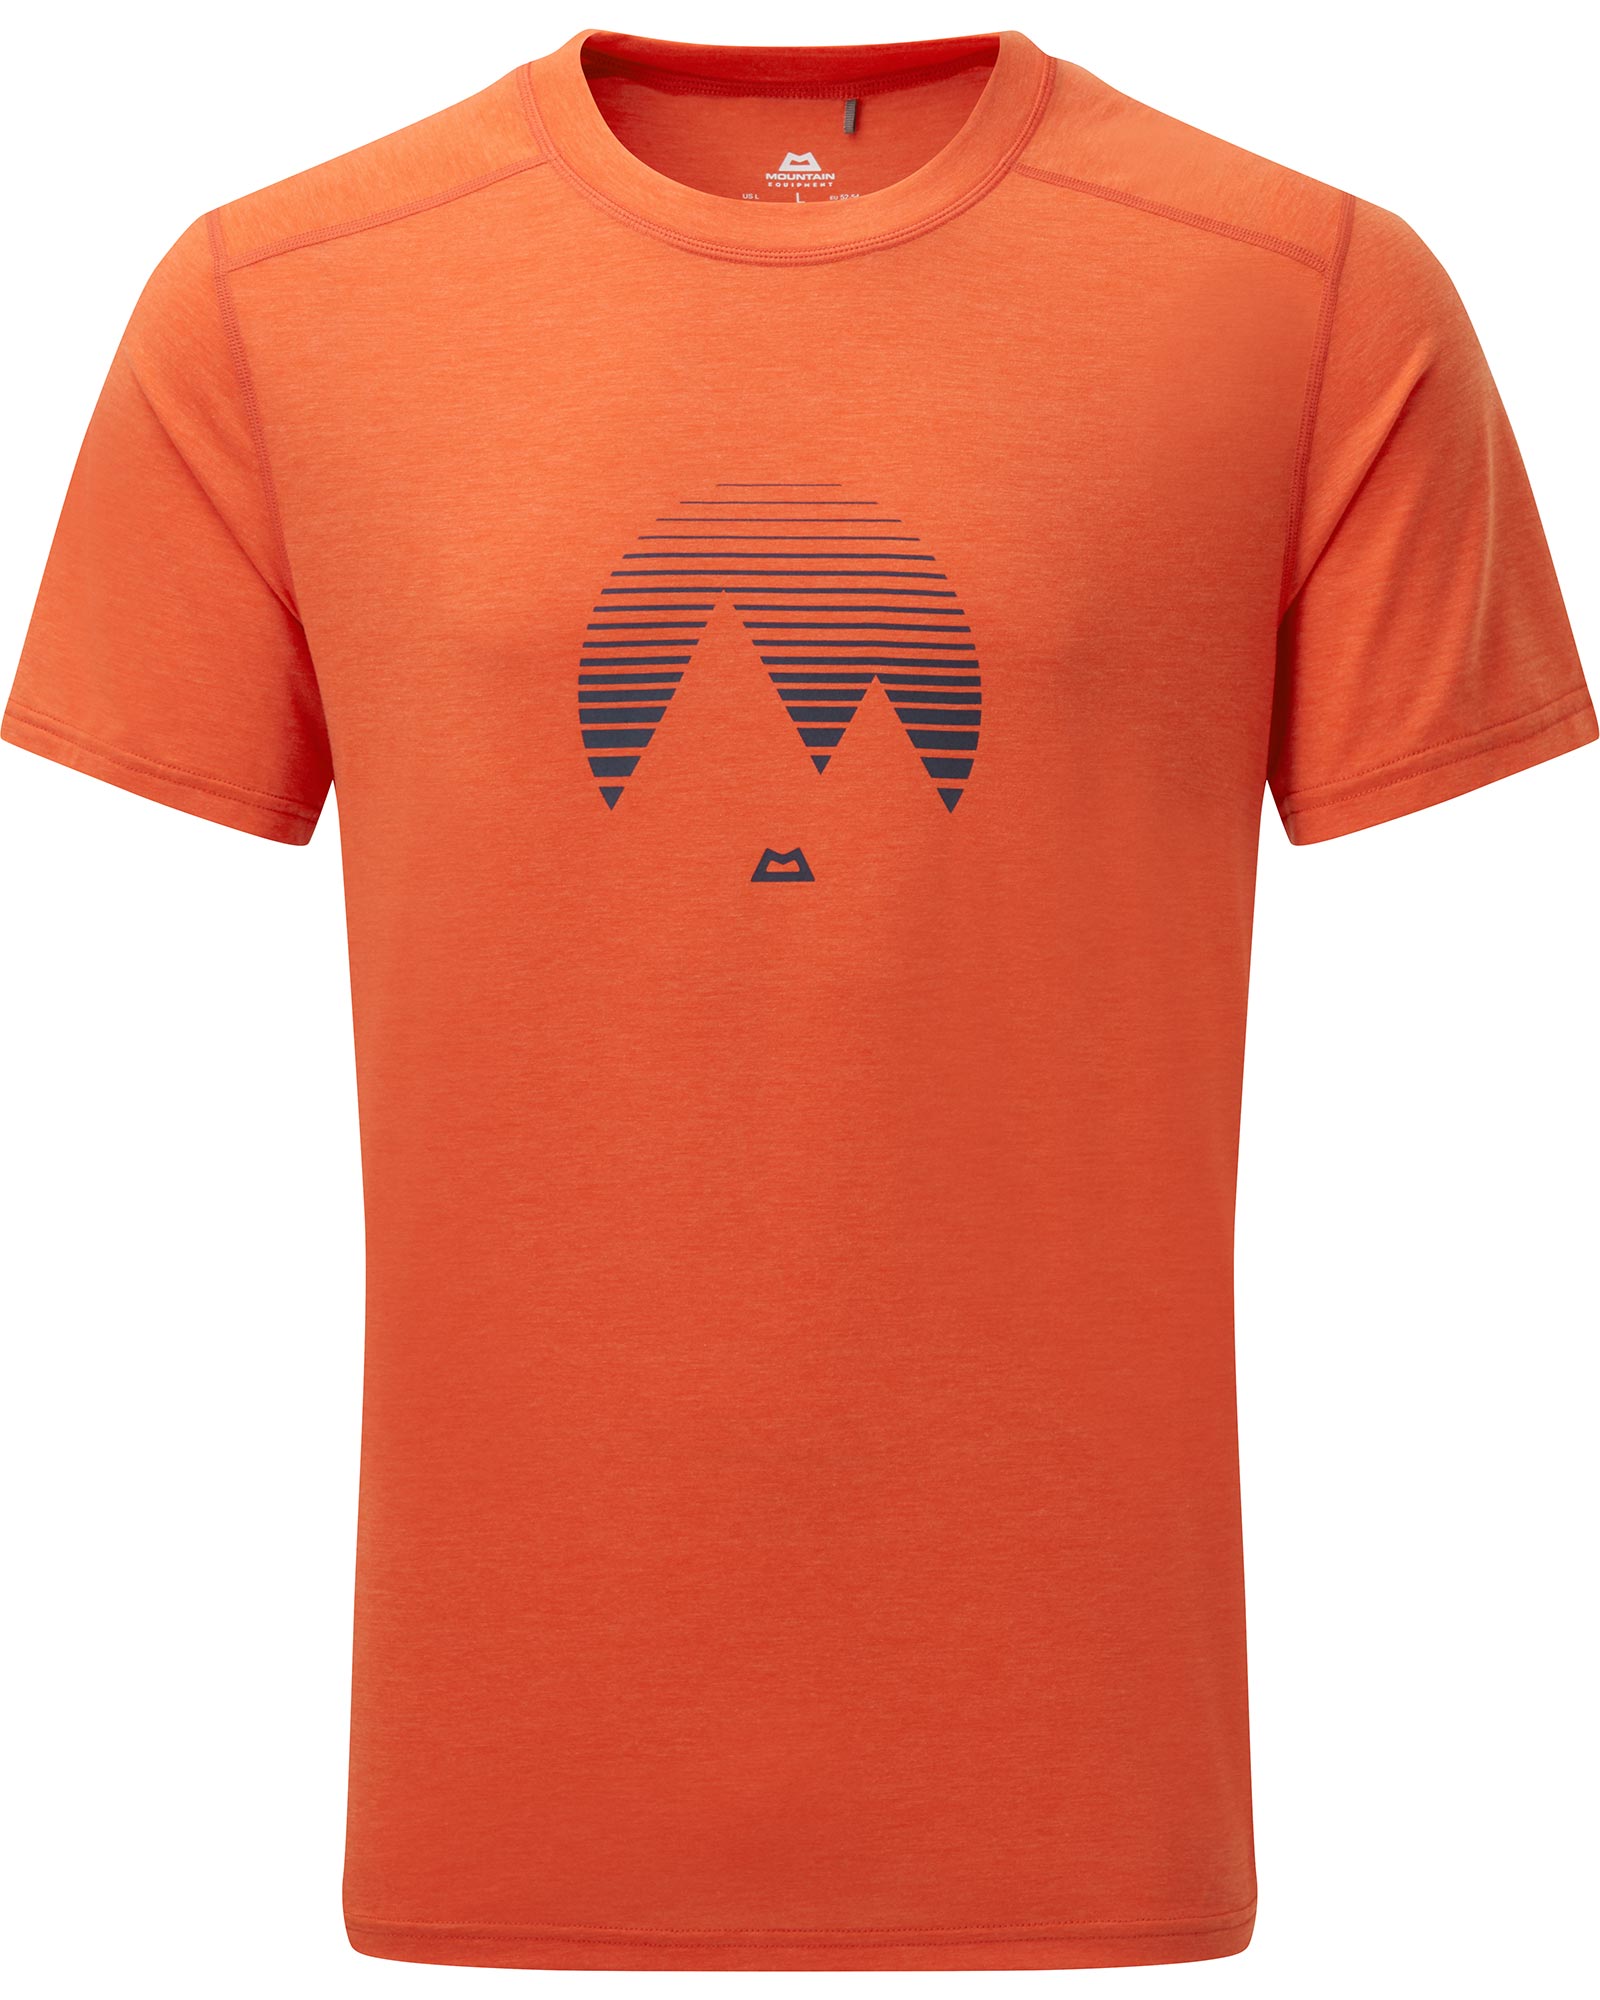 Mountain Equipment Headpoint Mountain Men’s T Shirt - Pumpkin S